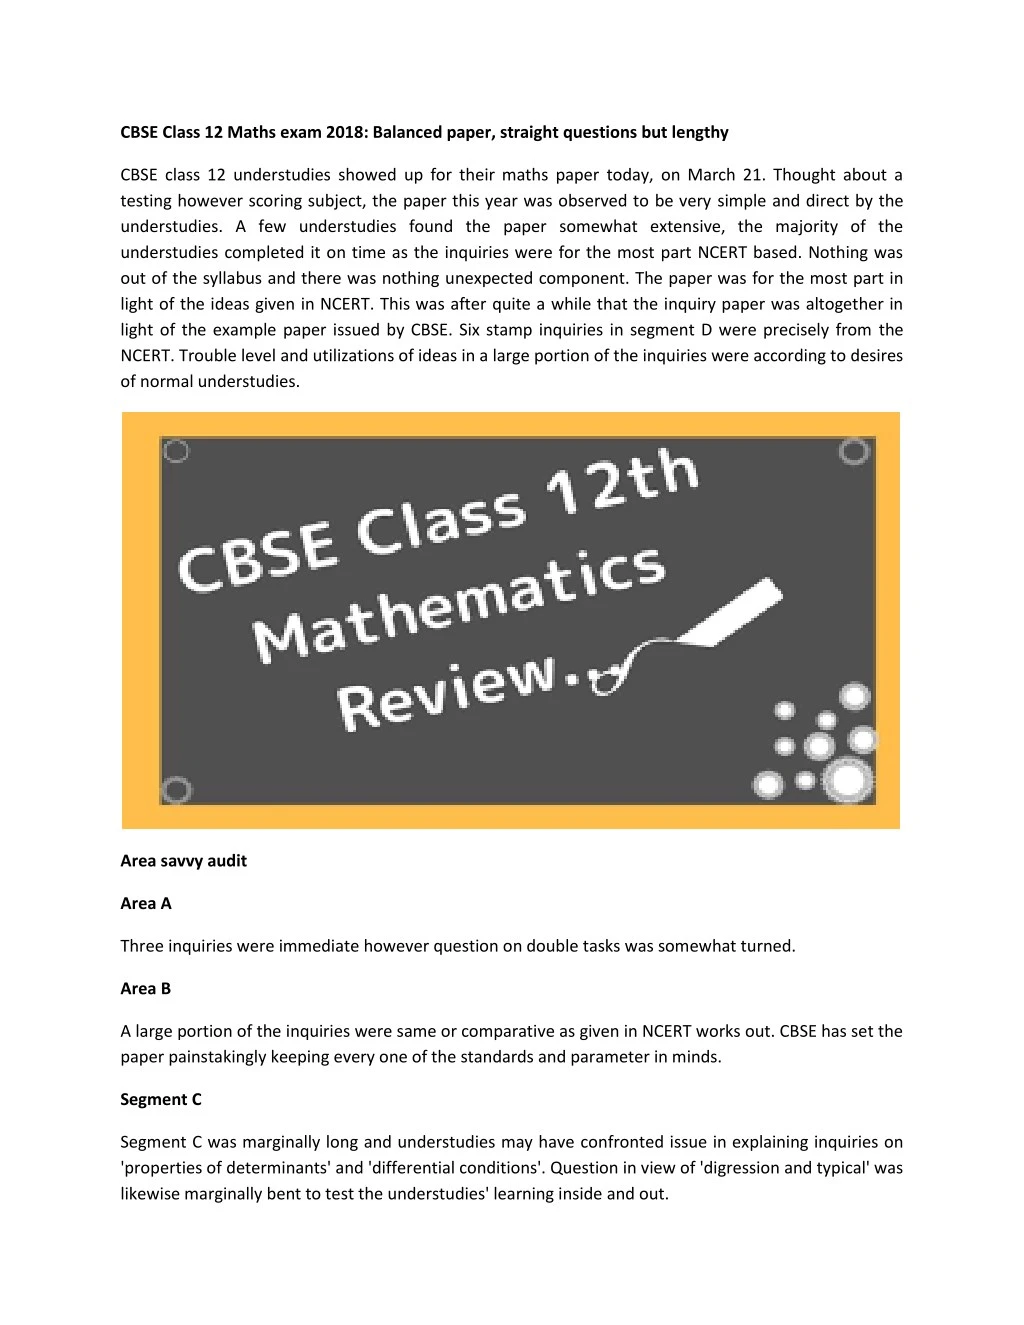 cbse class 12 maths exam 2018 balanced paper